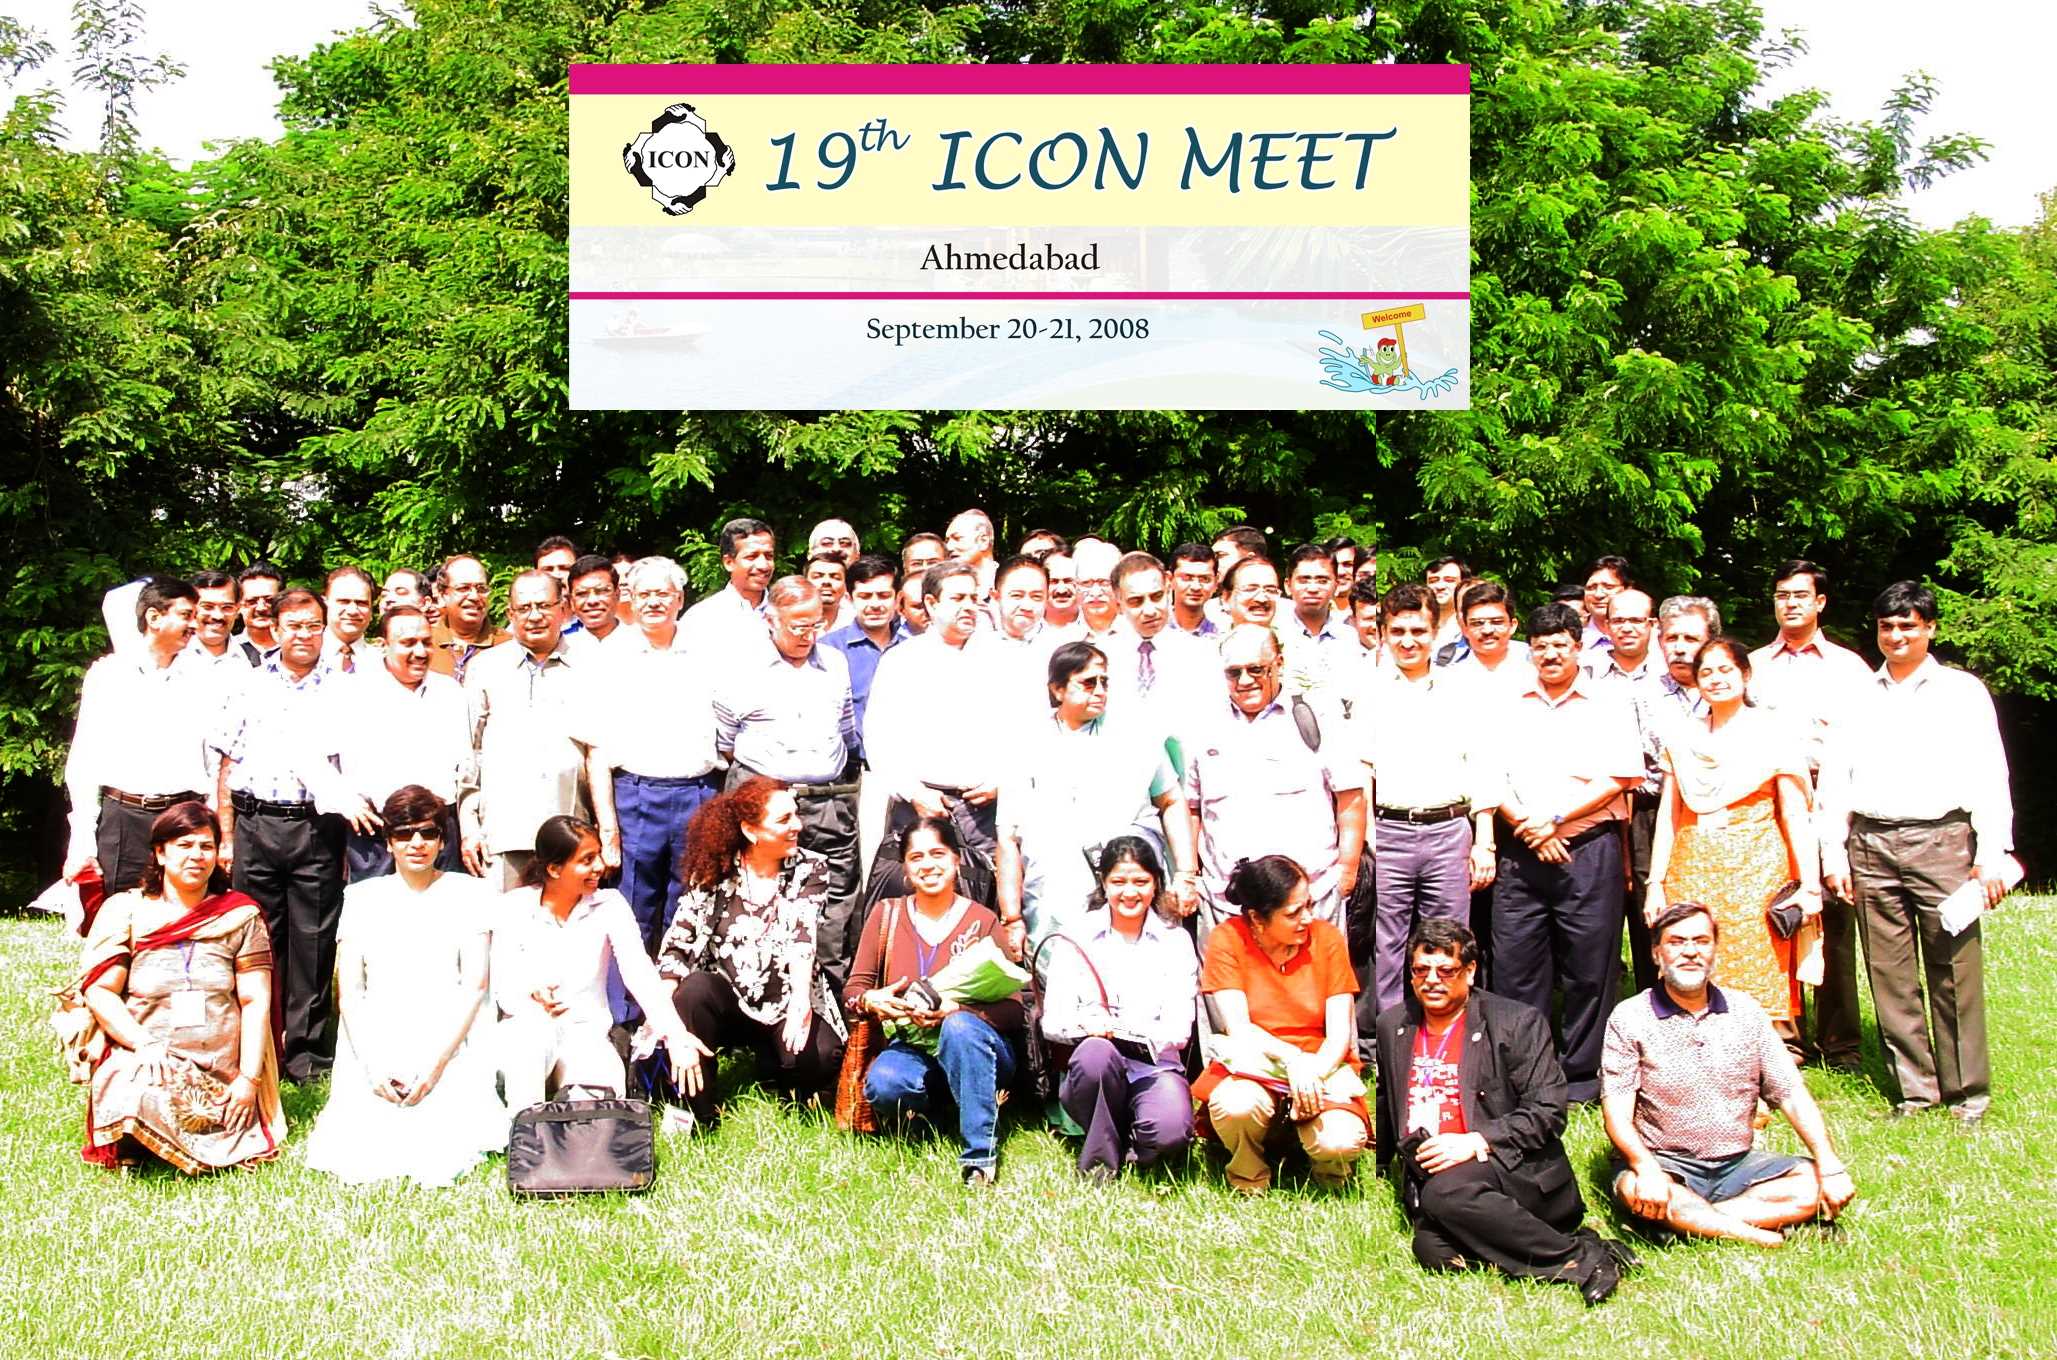 19th ICON Meet